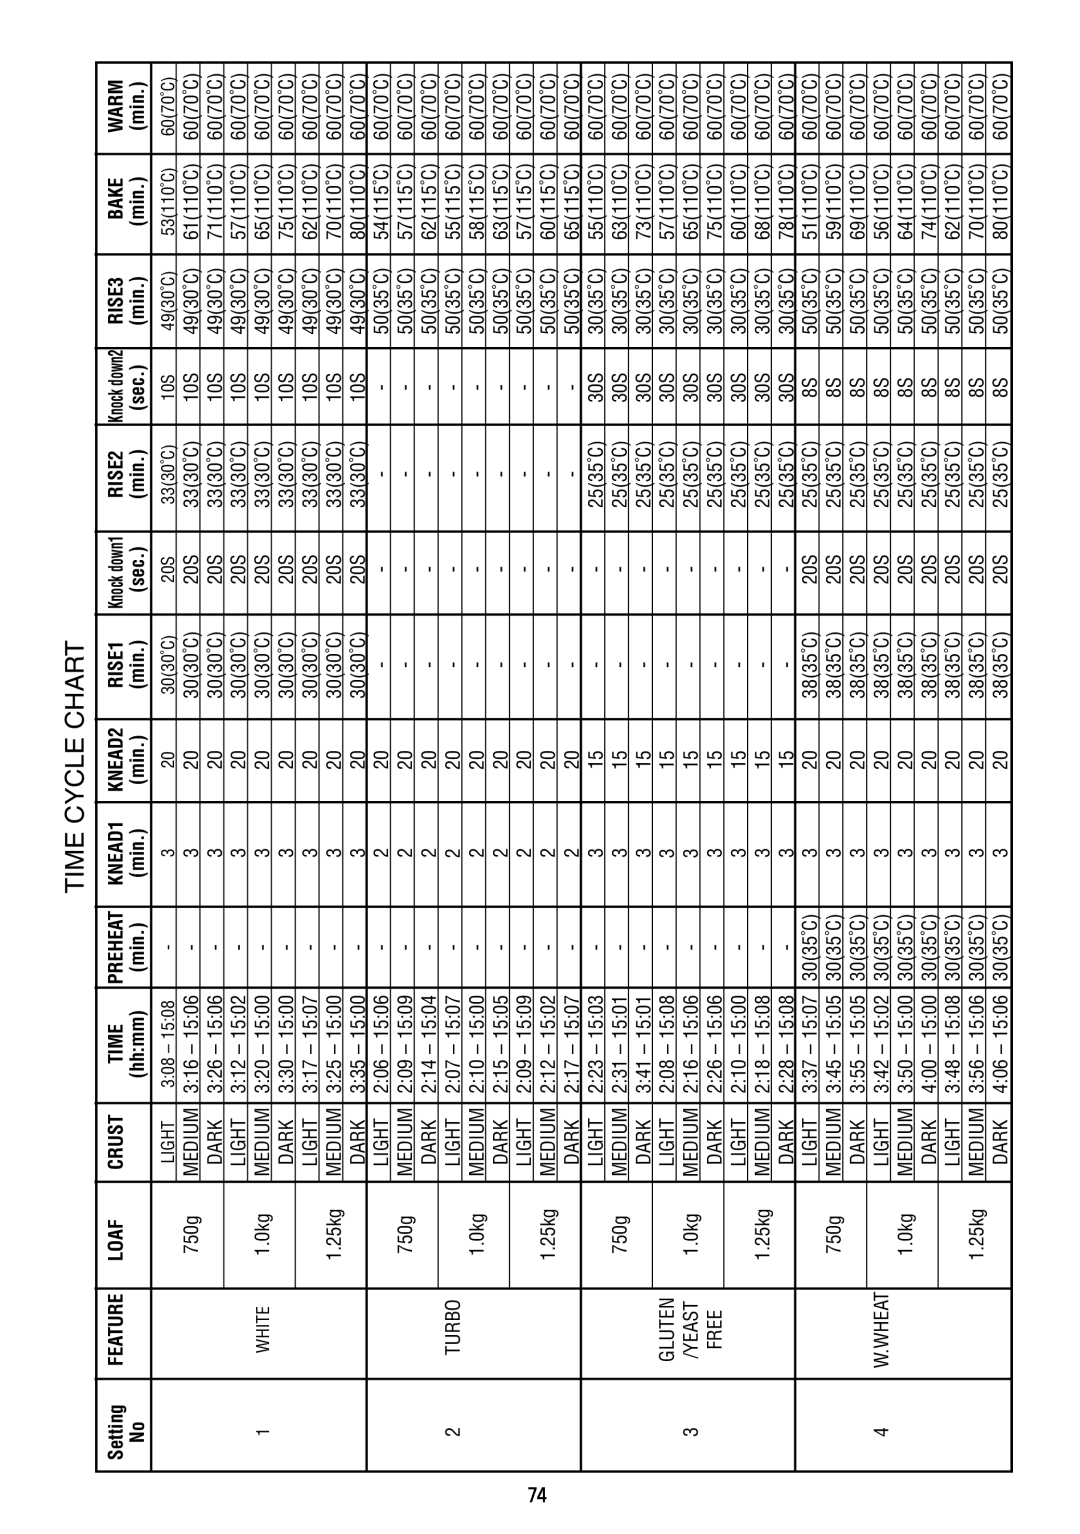 Sunbeam BM7800 manual Time Cycle Chart, Setting, Loaf, Crust, KNEAD1, RISE1, RISE2, RISE3, Bake, Warm 